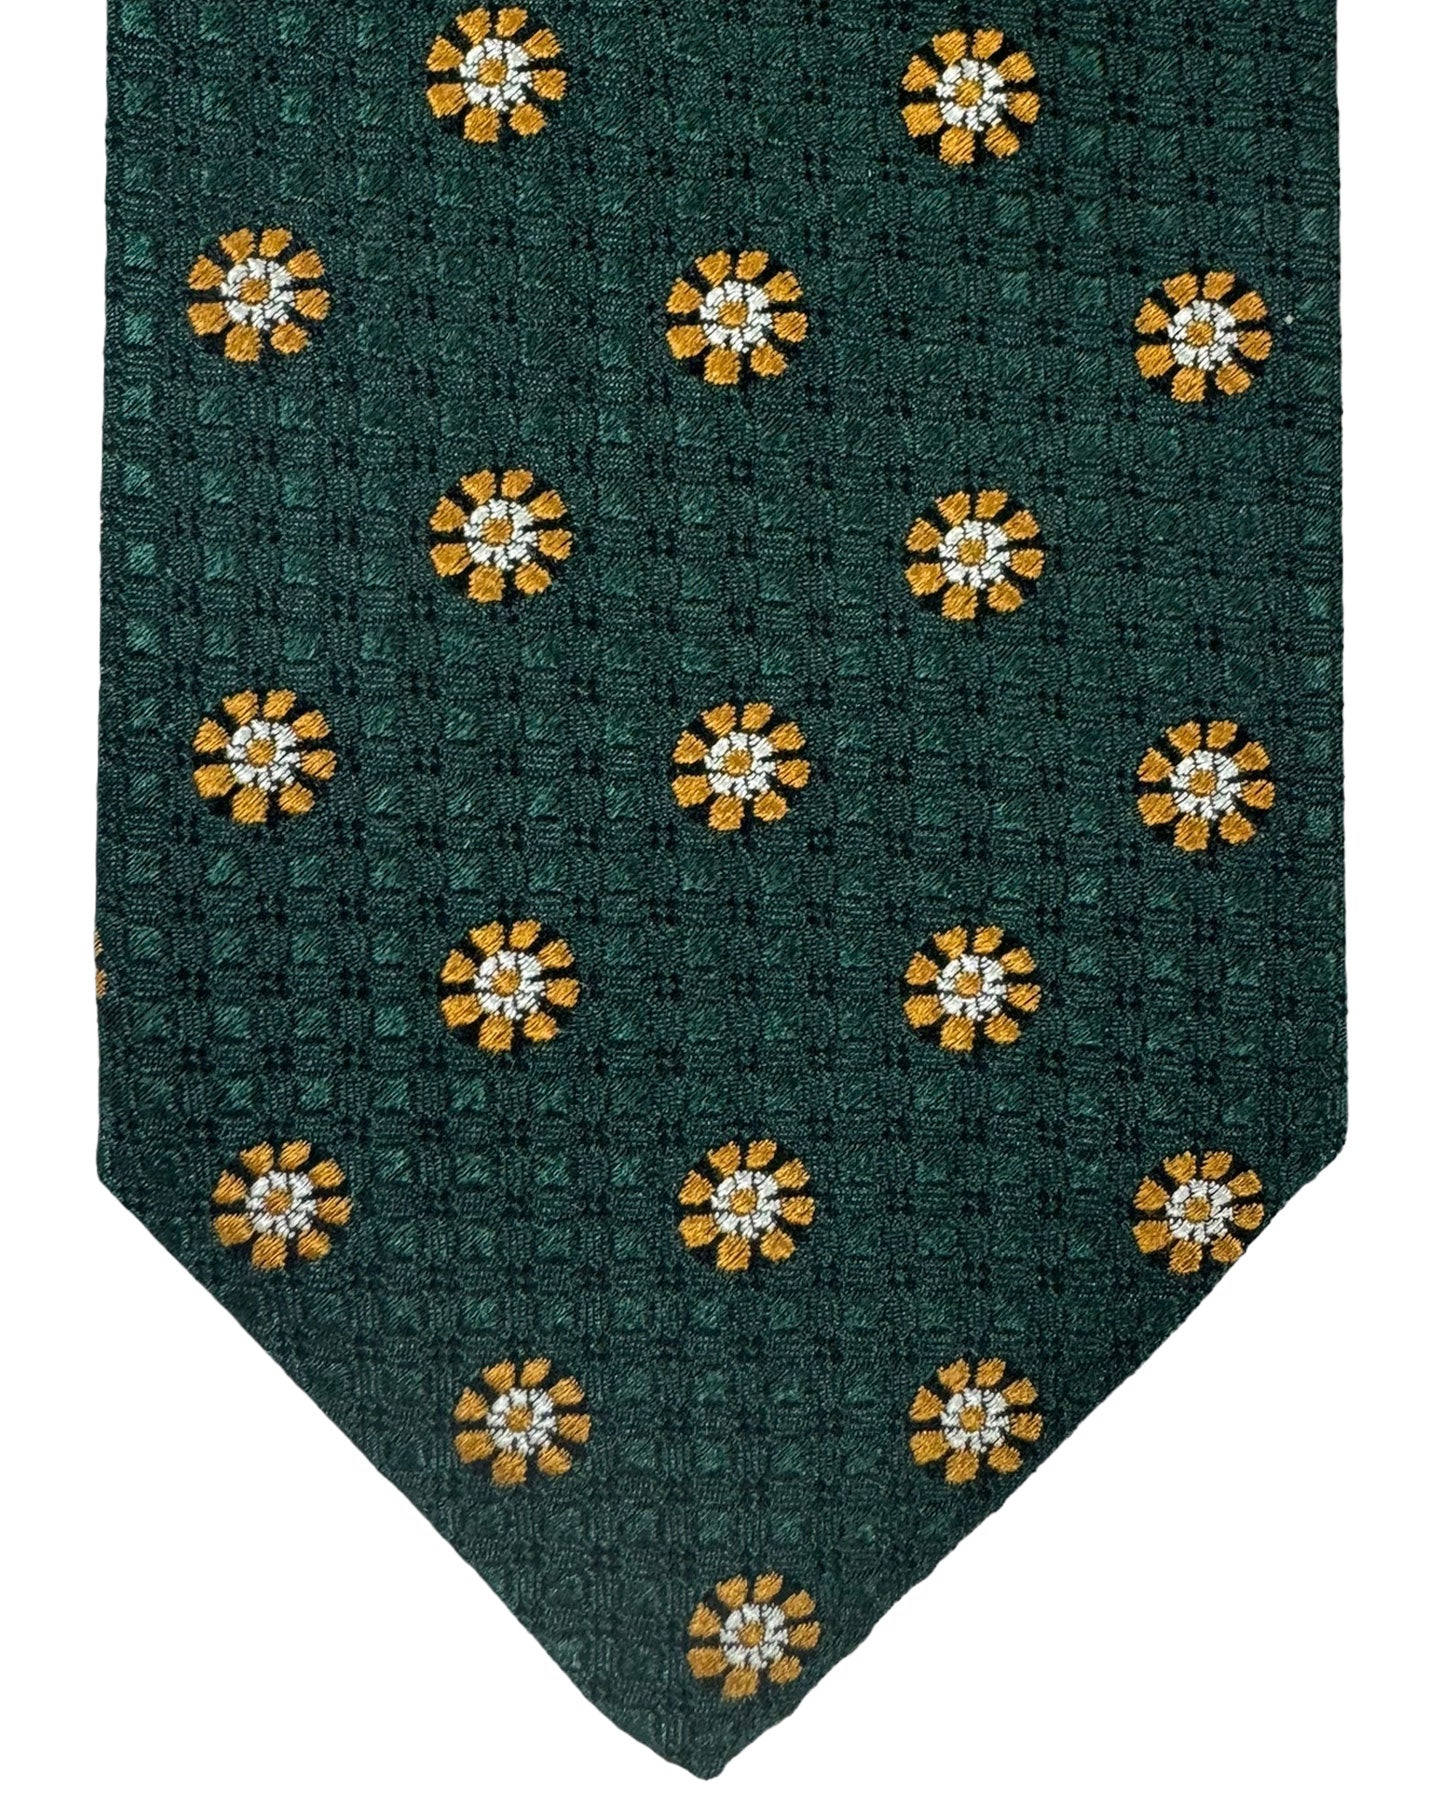 Canali Silk Tie Dark Green Floral Pattern - Classic Italian